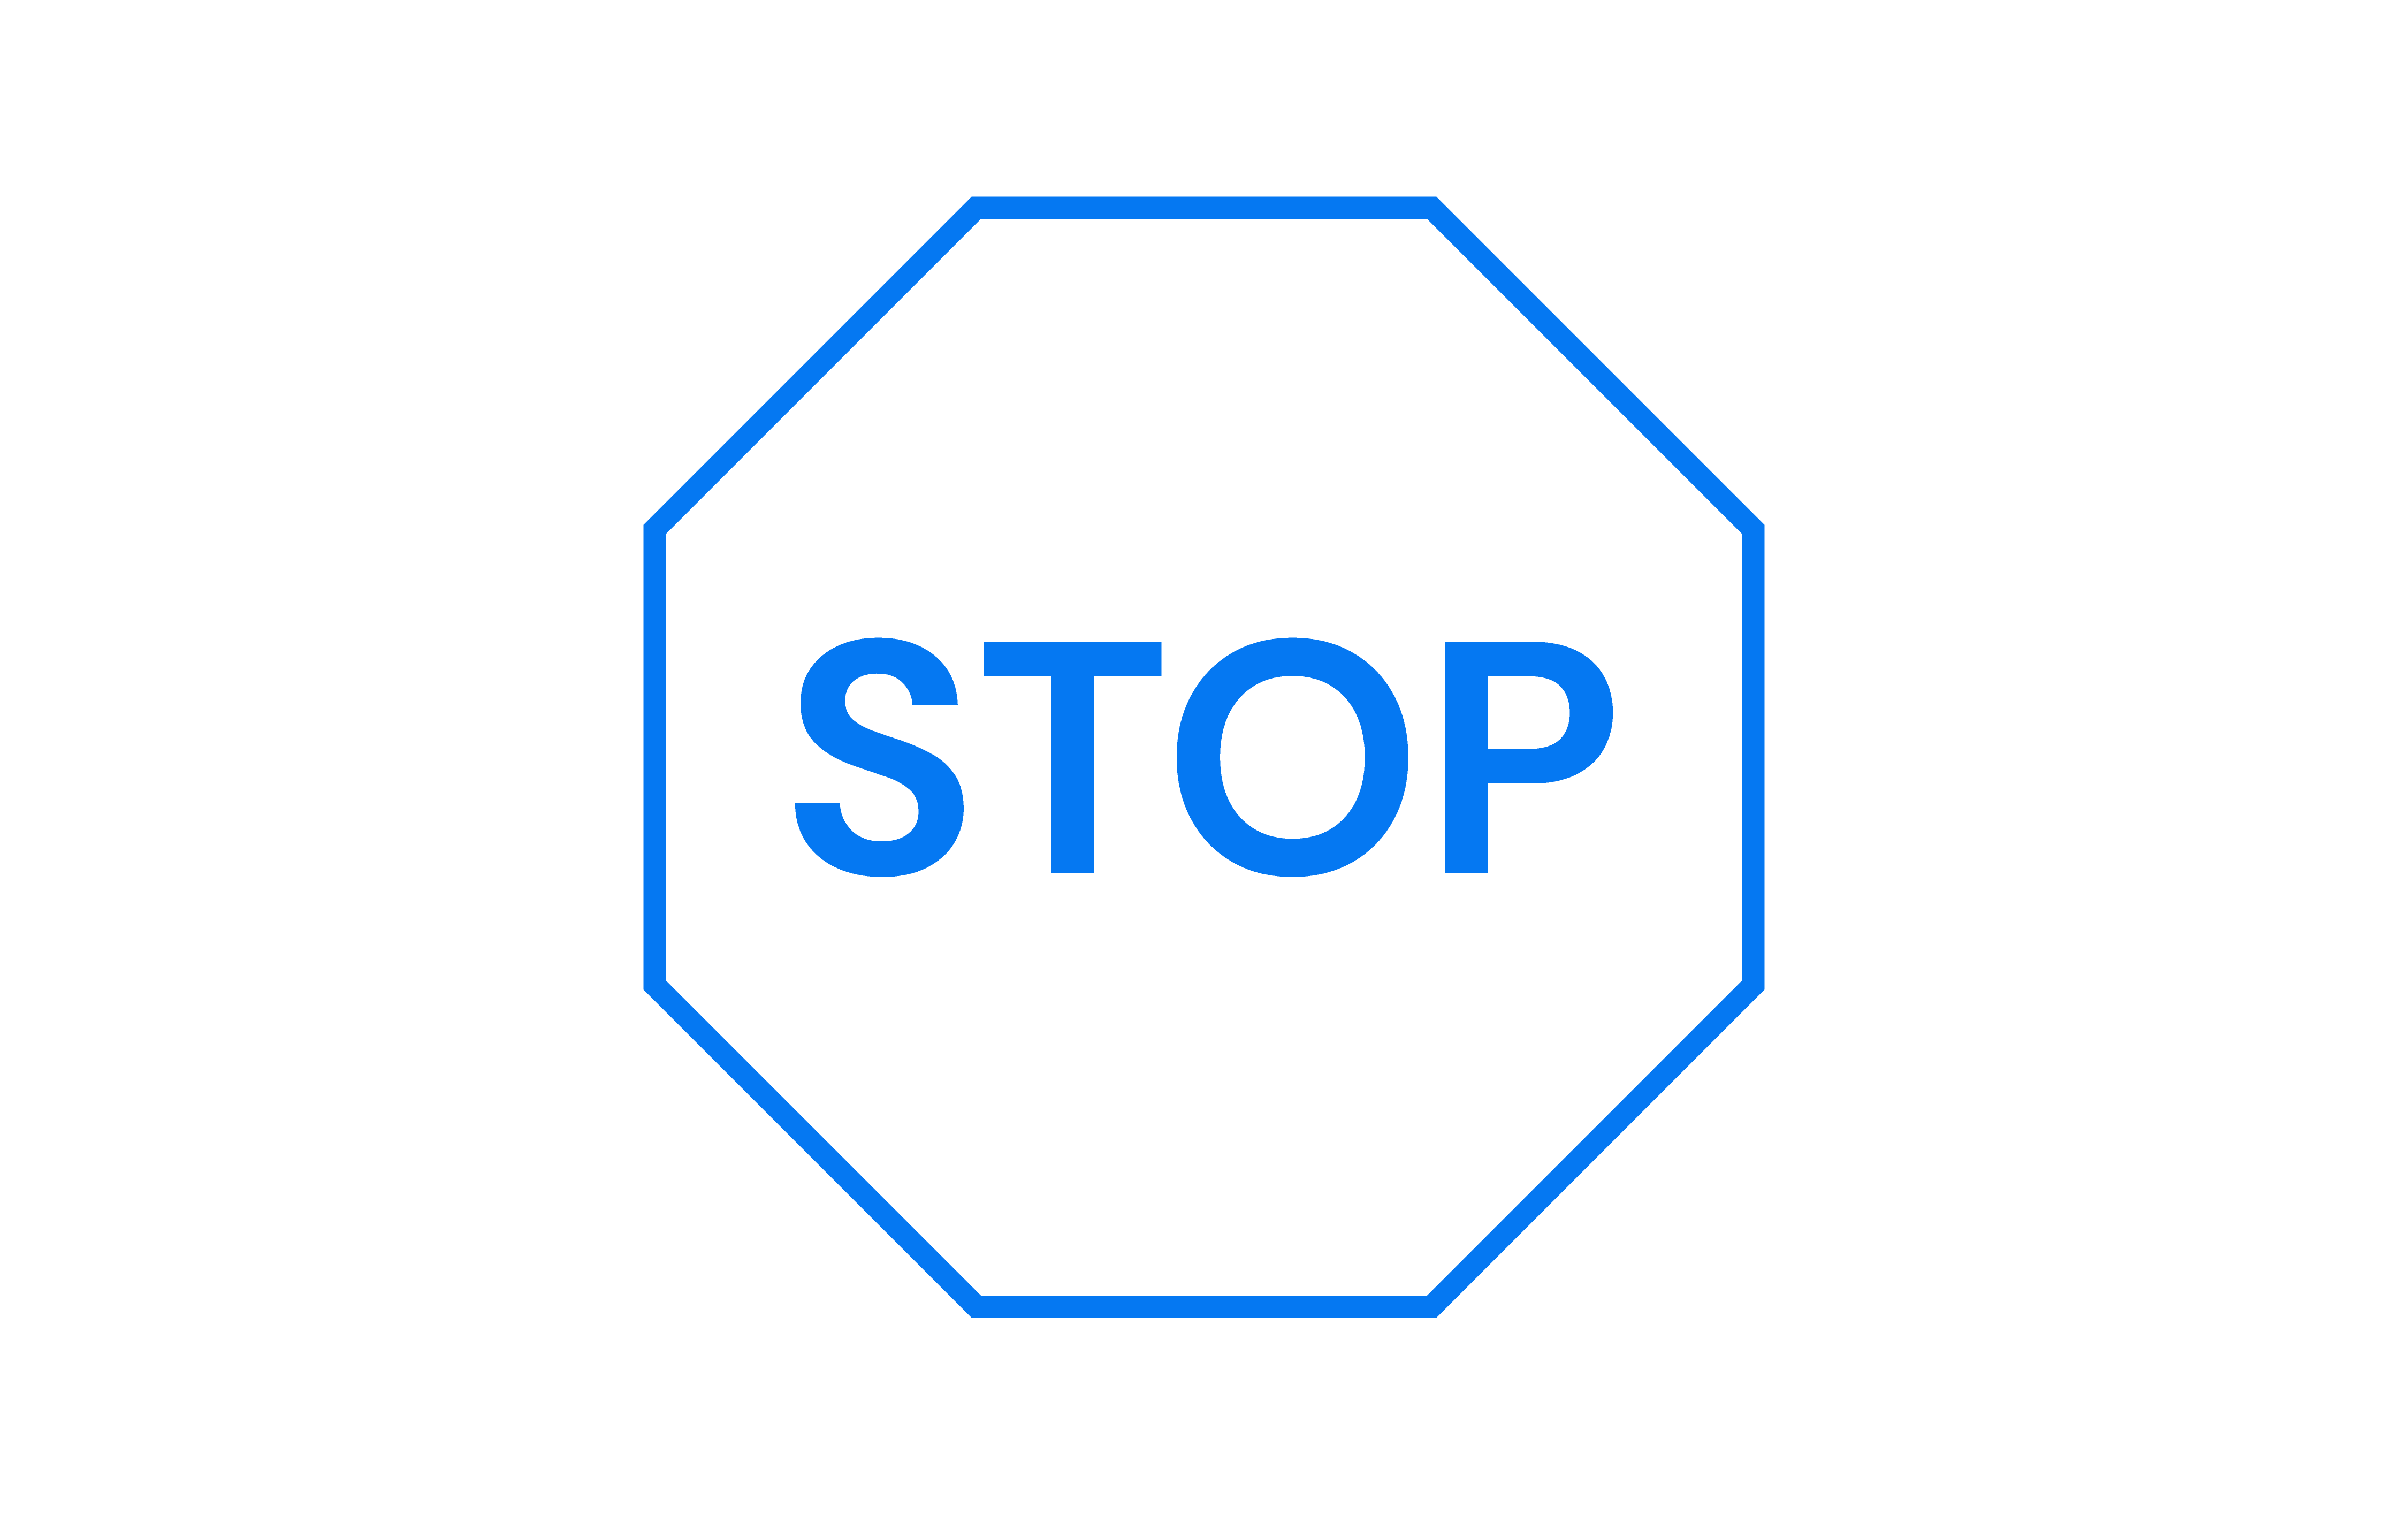 stoppaying-01-small-01